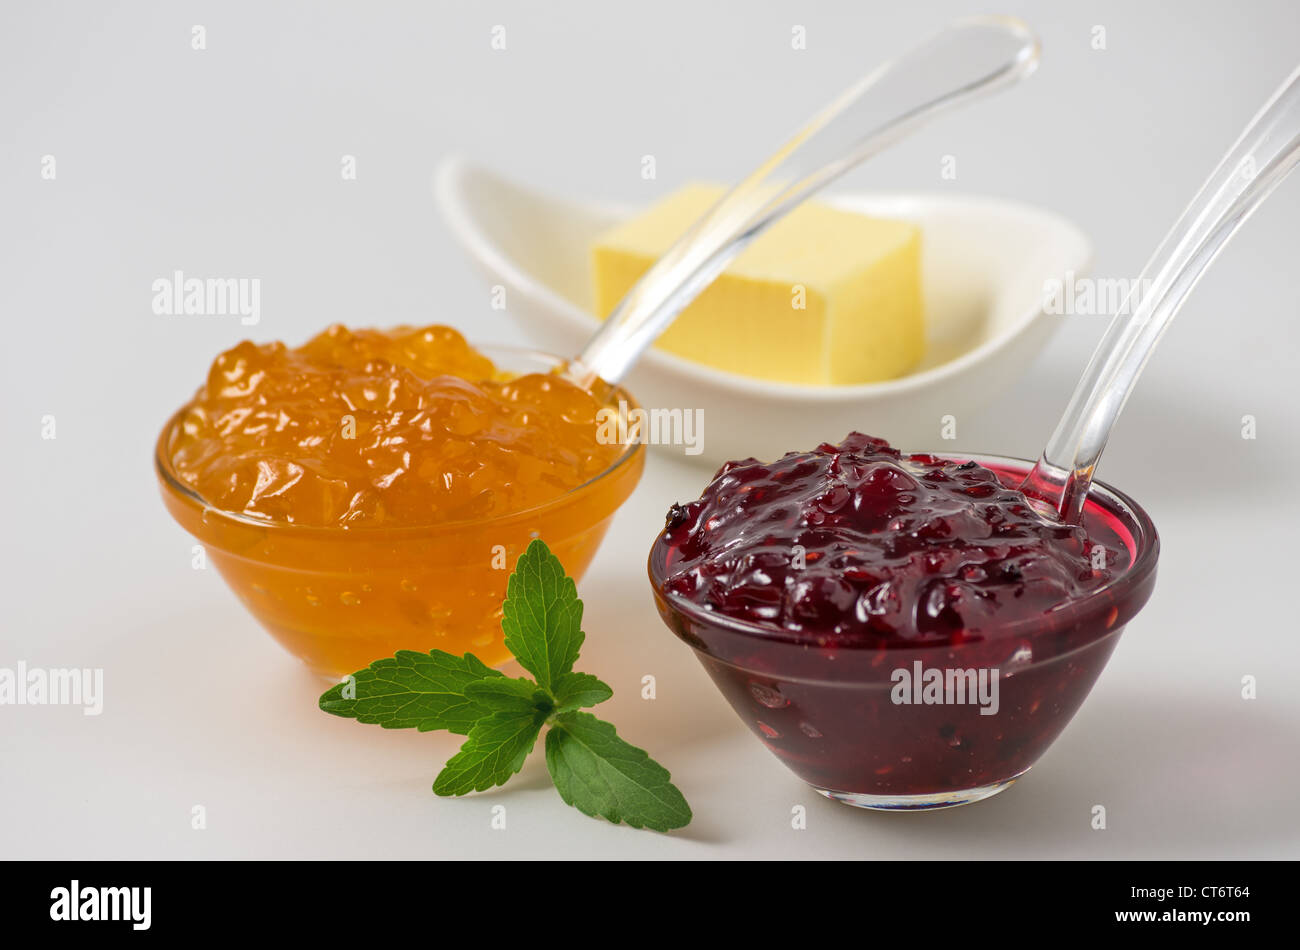 Marmelade mit Stevia-Blätter auf einem weißen Hintergrund Stockfoto